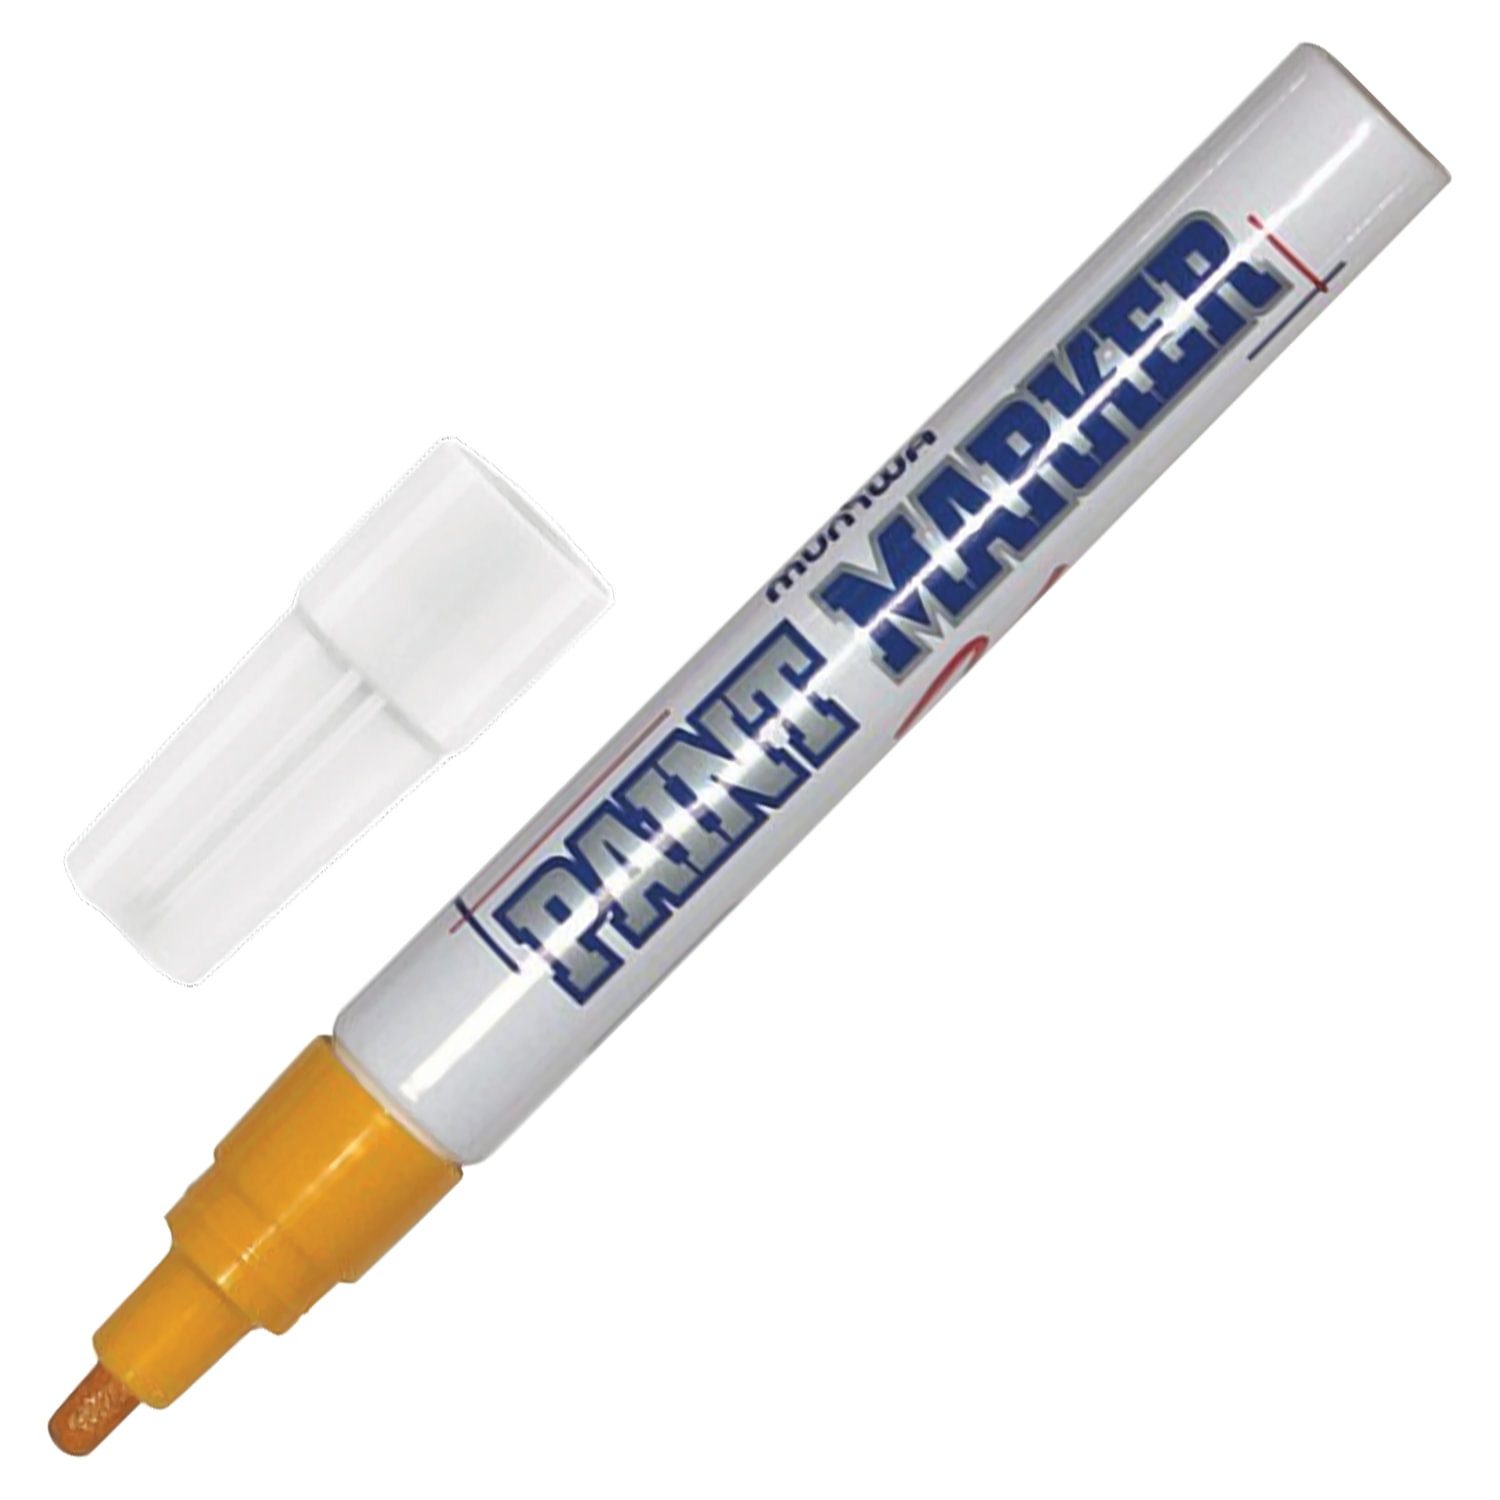 Маркер-краска лаковый (paint marker) MUNHWA, 4 мм, ЖЕЛТЫЙ, нитро-основа, алюминиевый корпус, PM-08 купите по выгодной цене